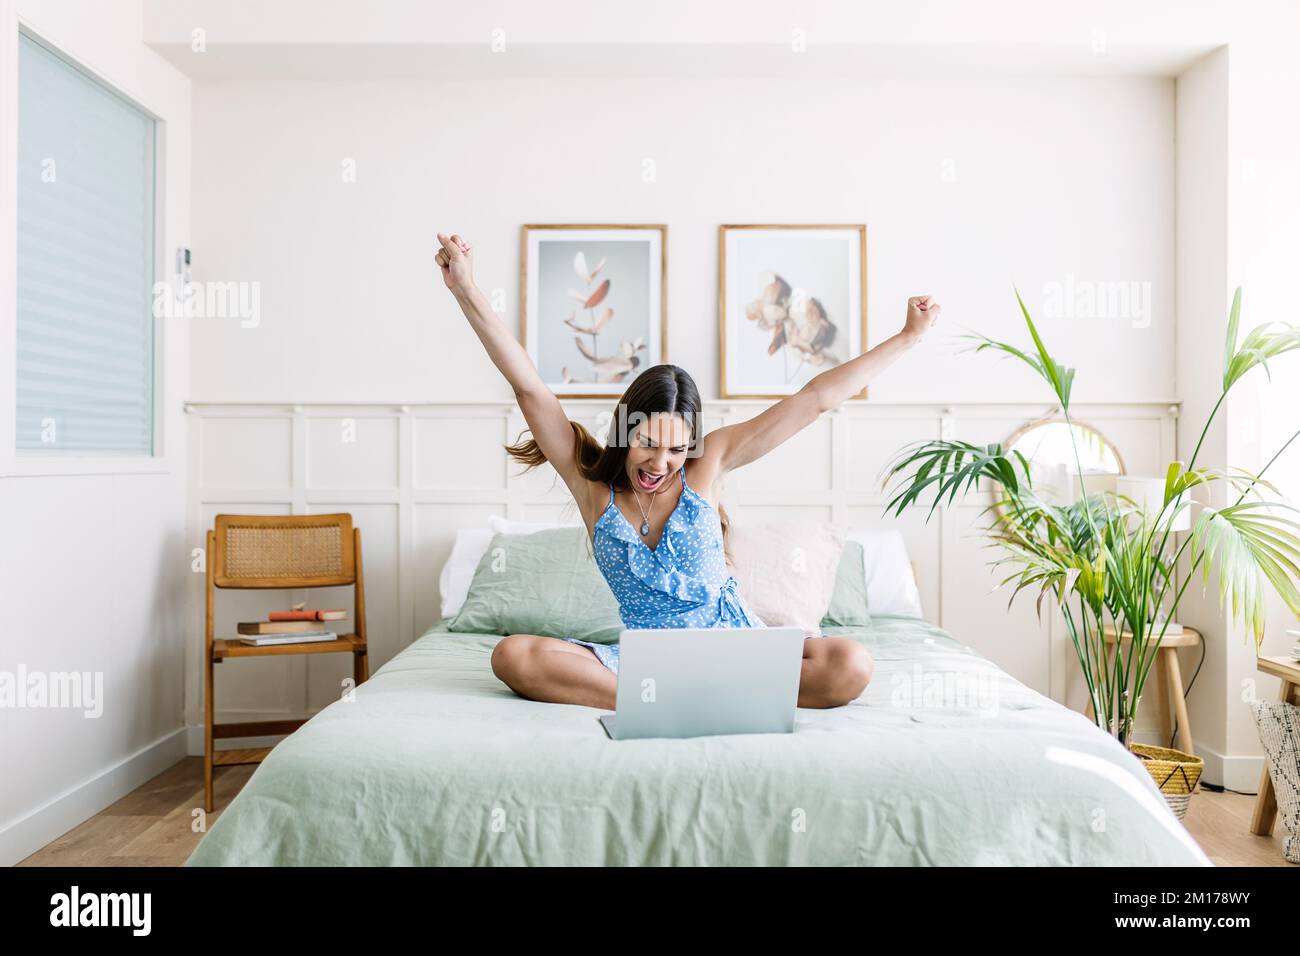 Aufgeregte junge Erwachsene Frau, die mit einem Notebook im Bett sitzt und ihren Erfolg feiert Stockfoto